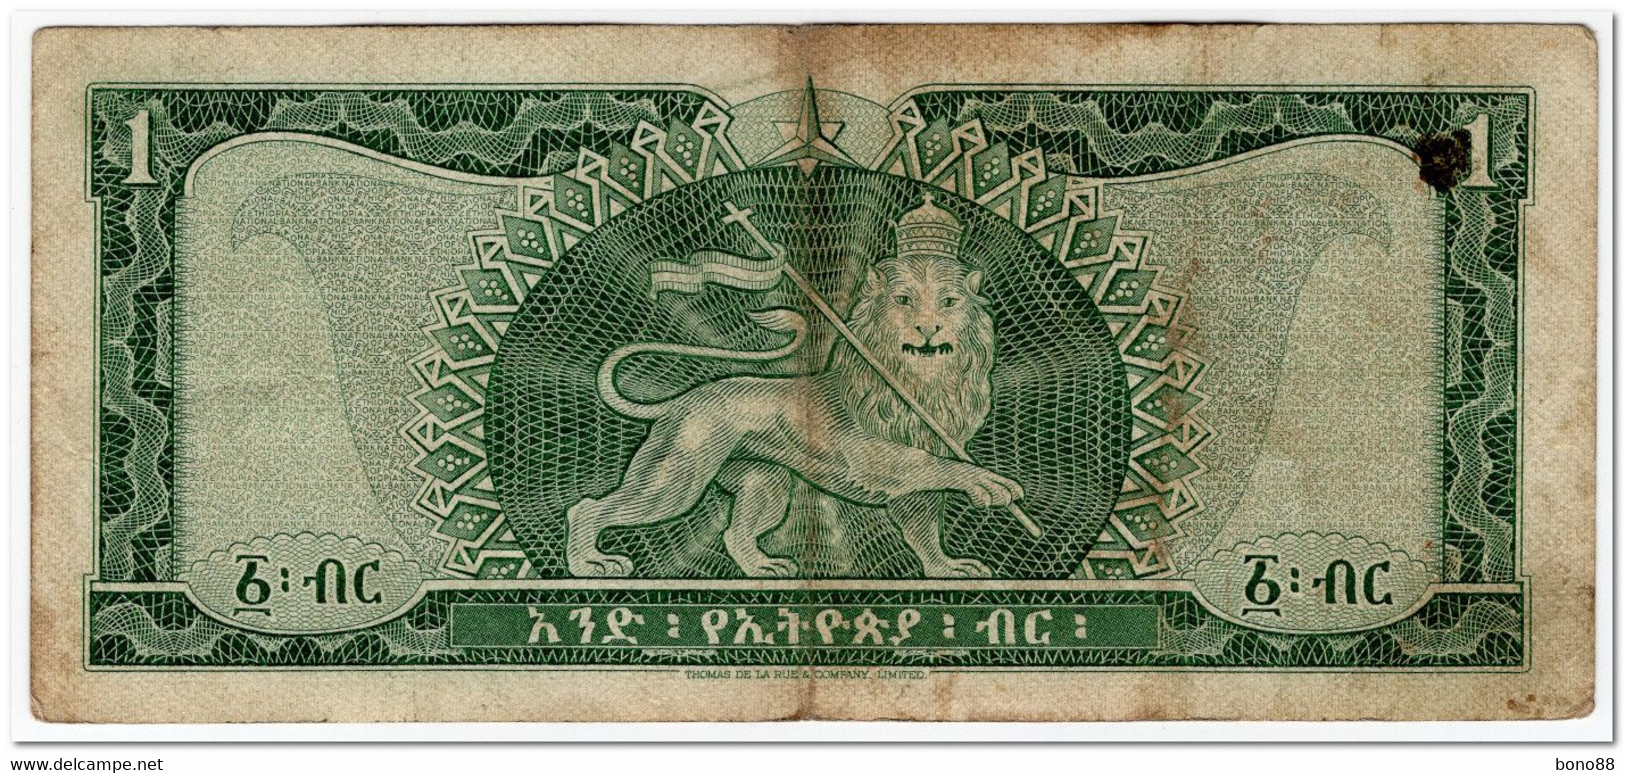 ETHIOPIA,1 DOLLAR,1966,P.25,VF - Ethiopia